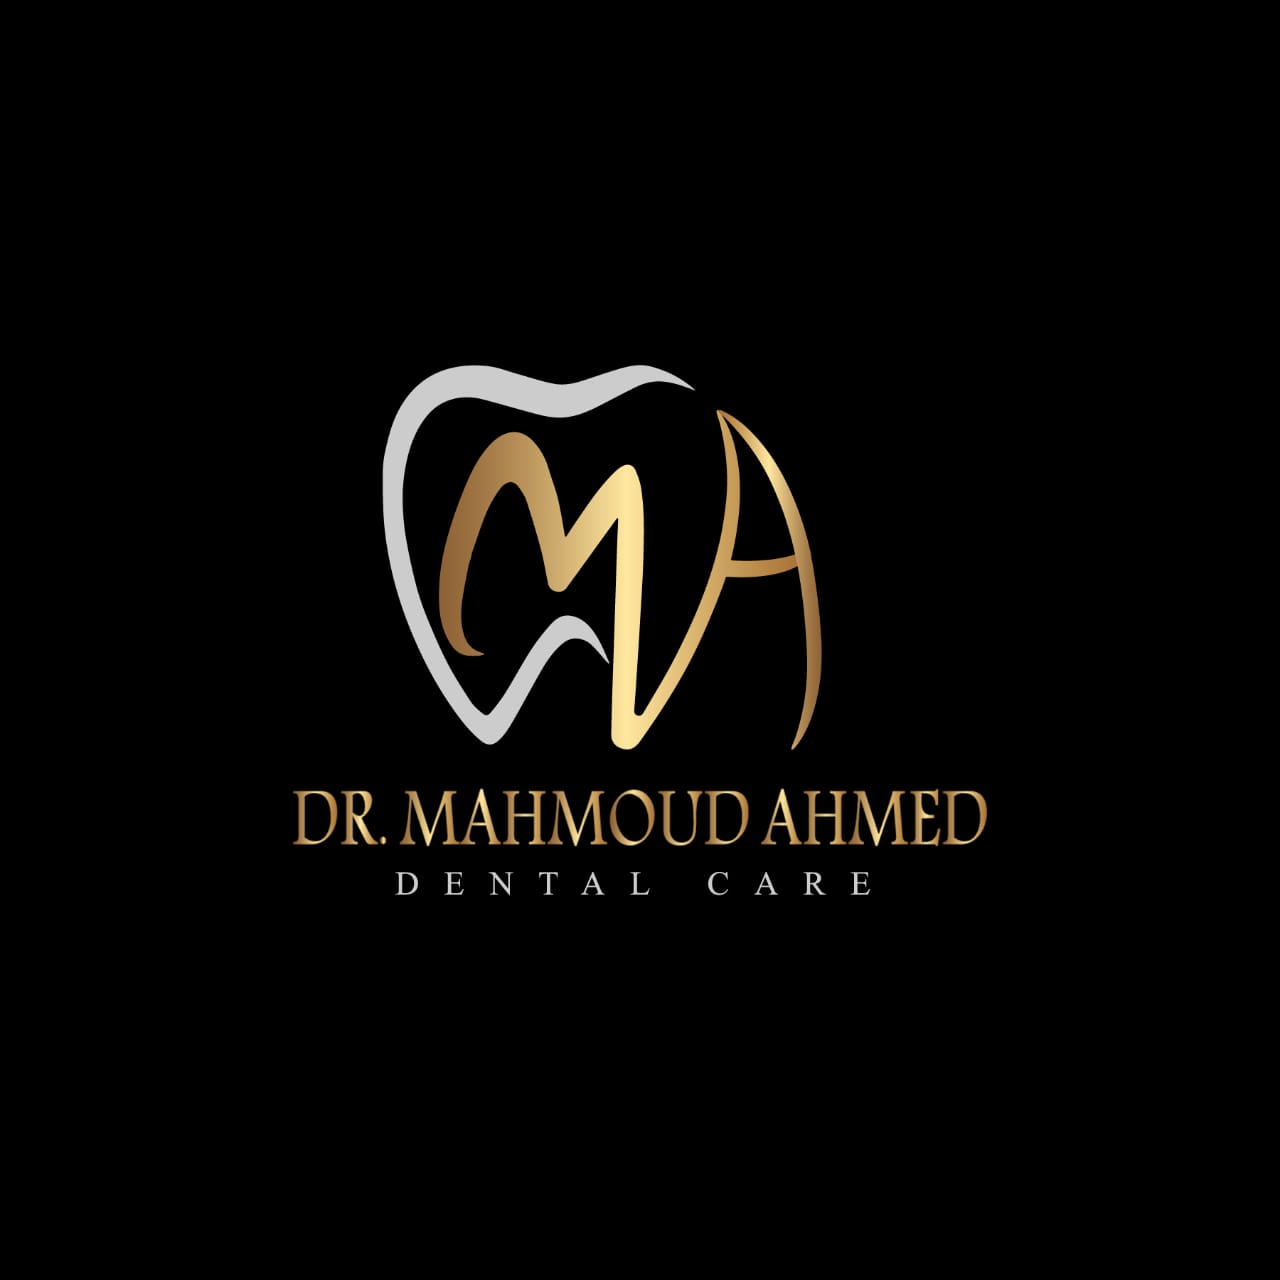 دكتور محمود احمد طبيب وجراح الفم والاسنان